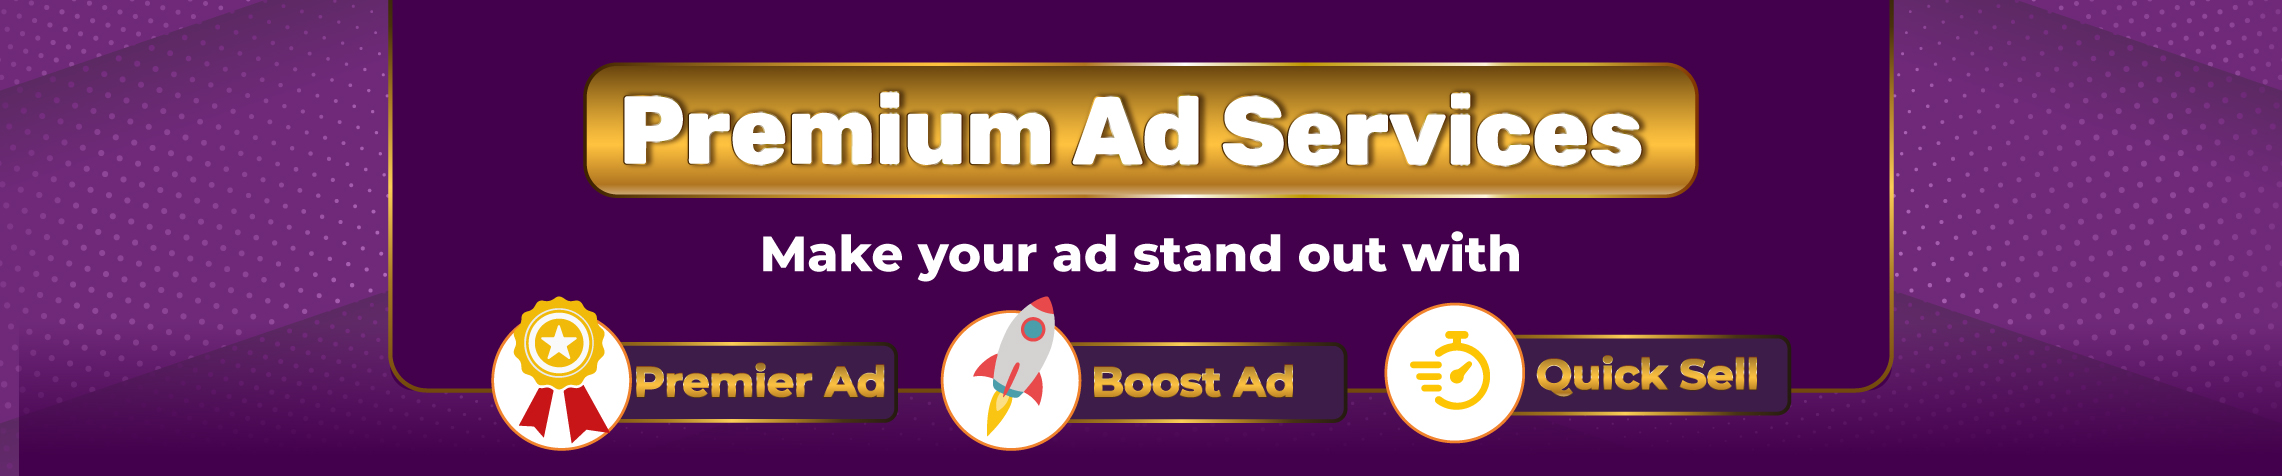 premium ad services banner